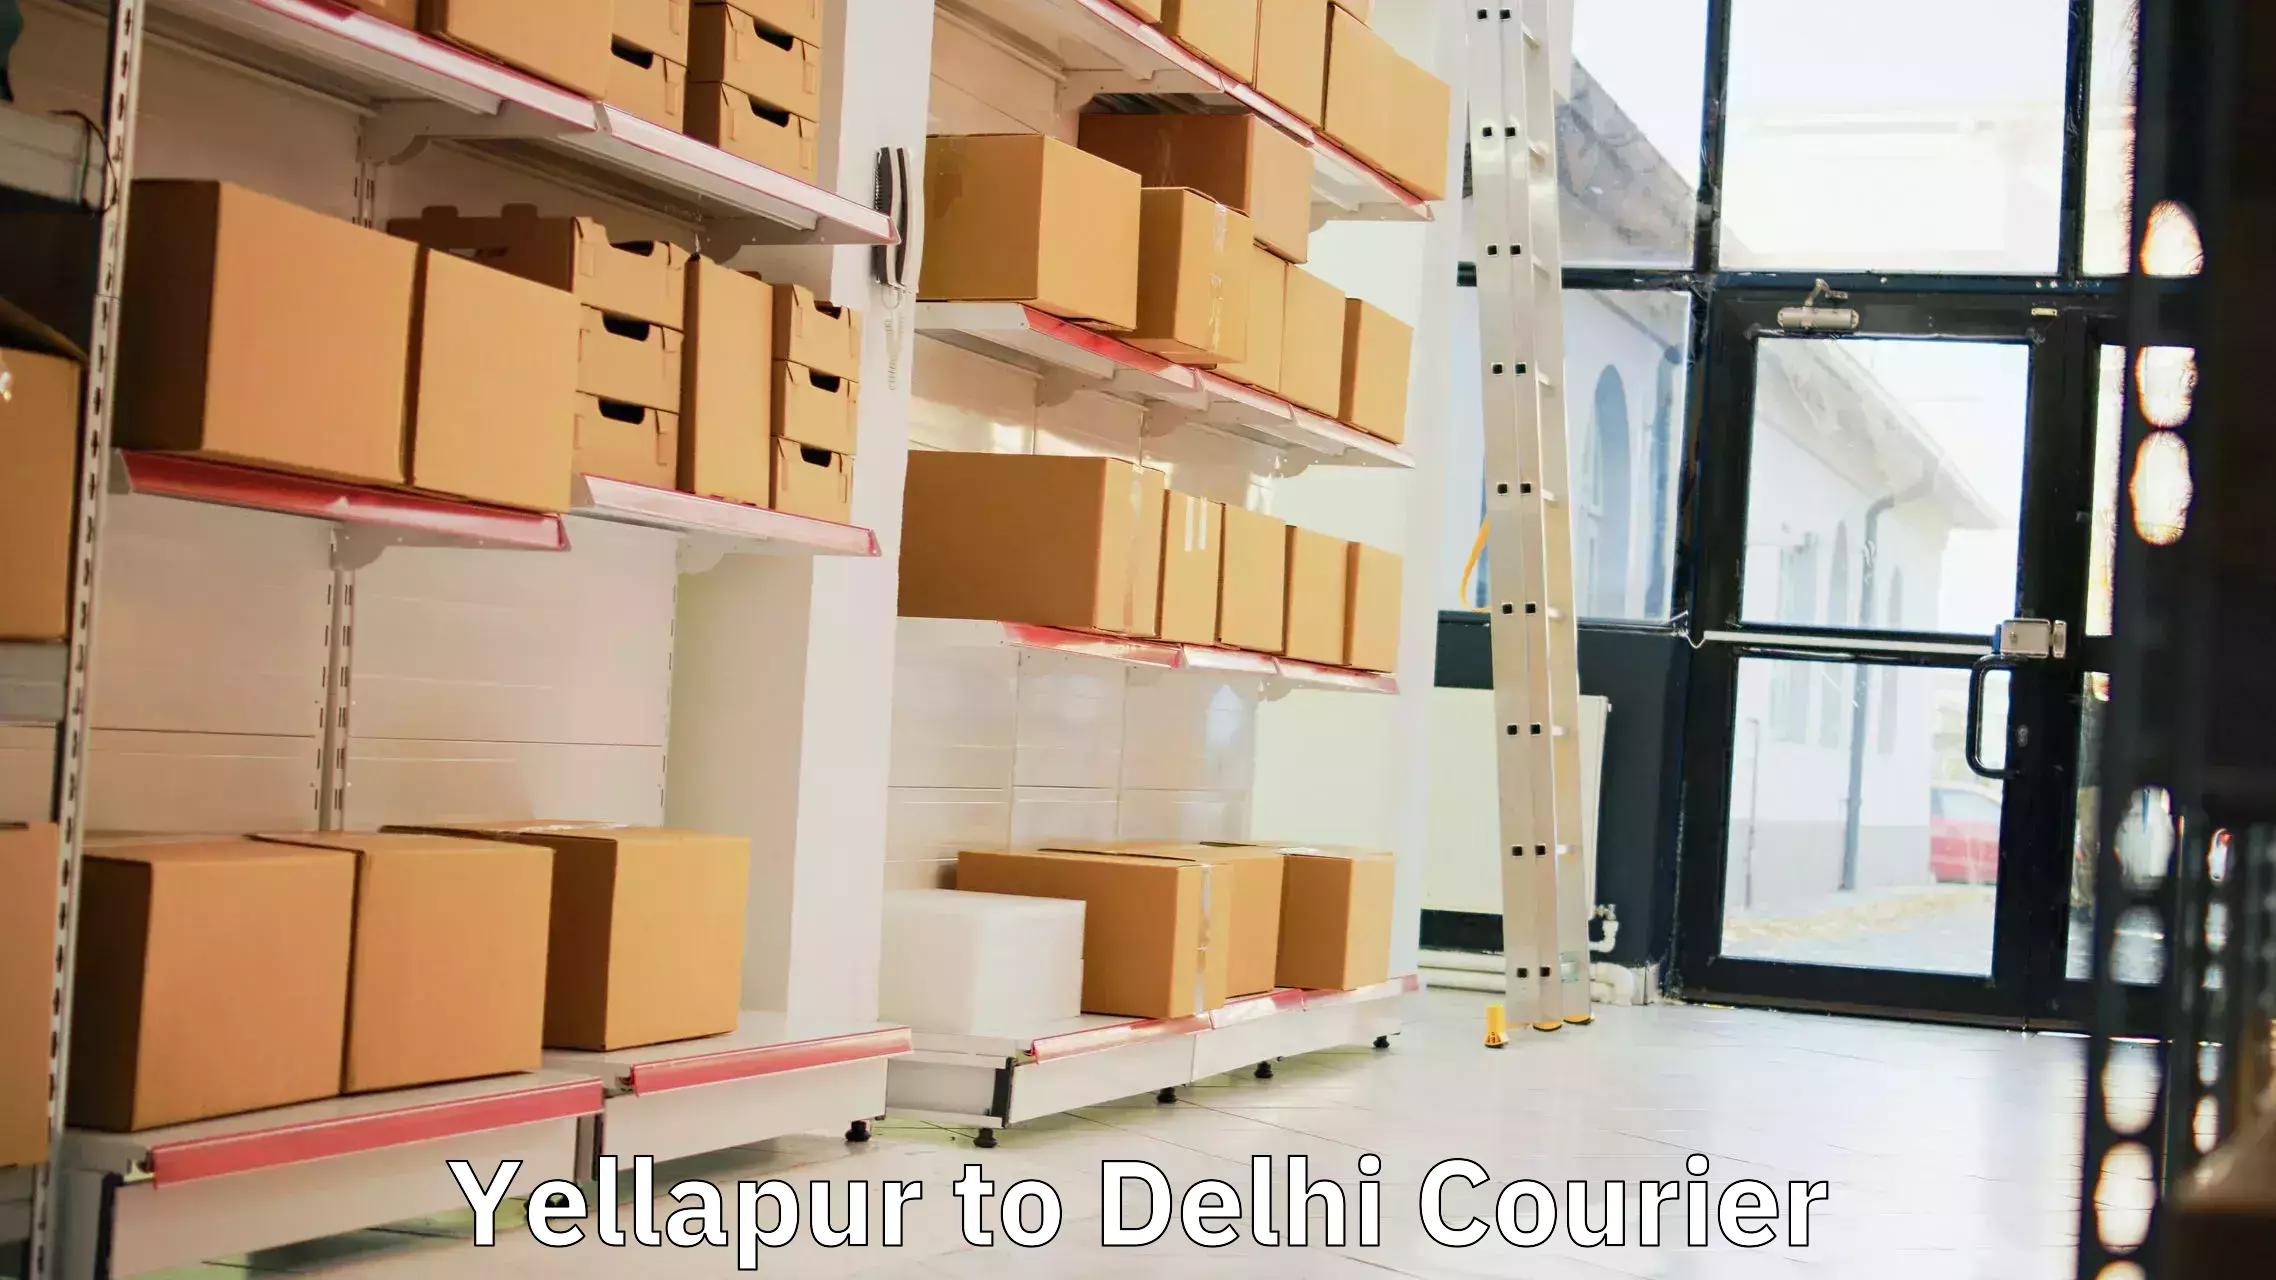 Urban courier service Yellapur to IIT Delhi